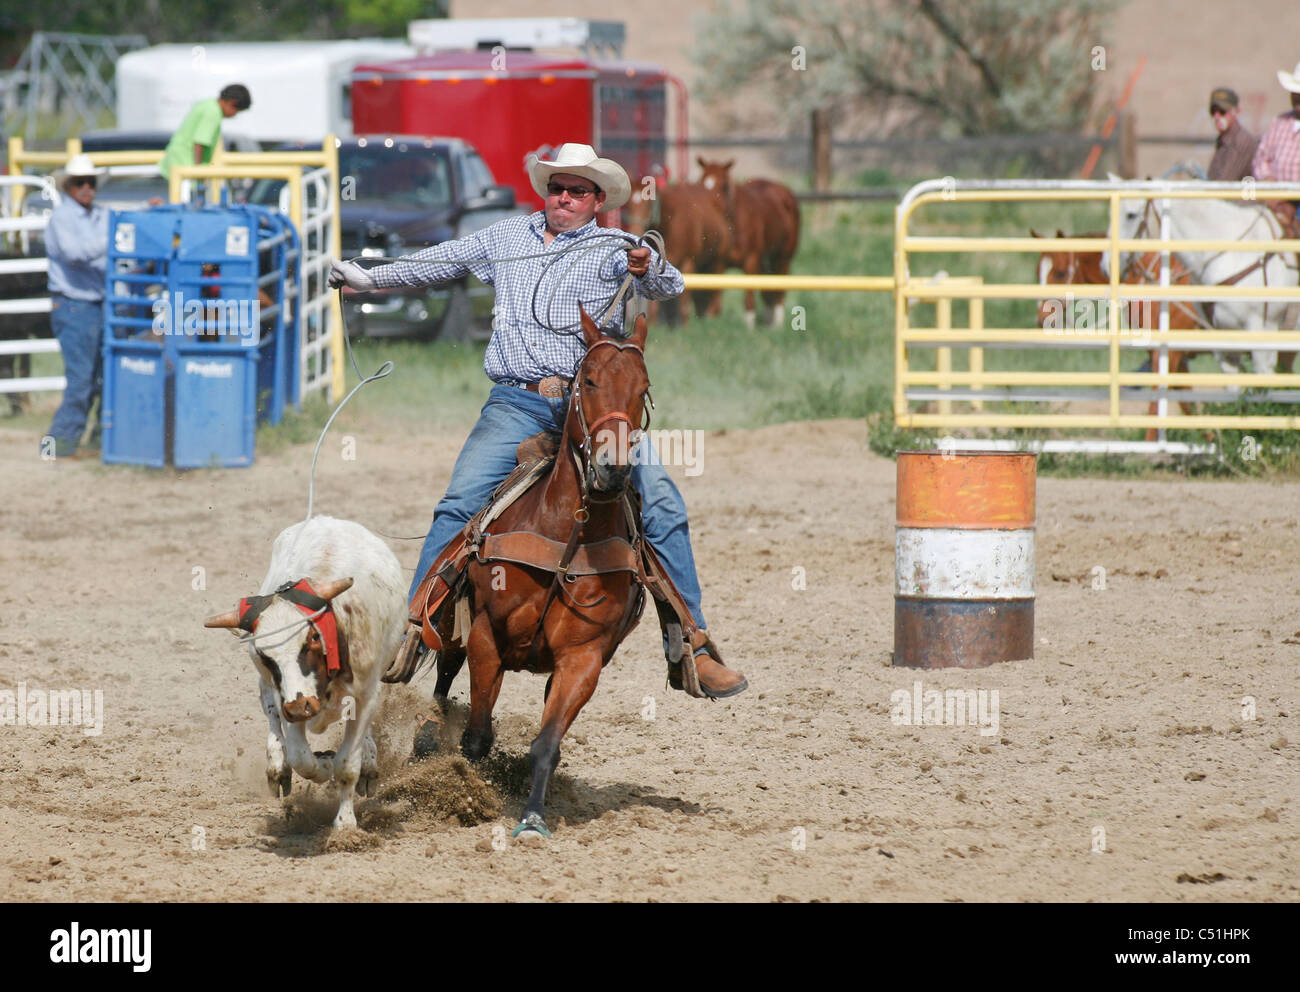 Team roping evento durante un rodeo parte dell'est indiano Shoshone giorni tenuto annualmente in Fort Washakie, Wyoming. Foto Stock